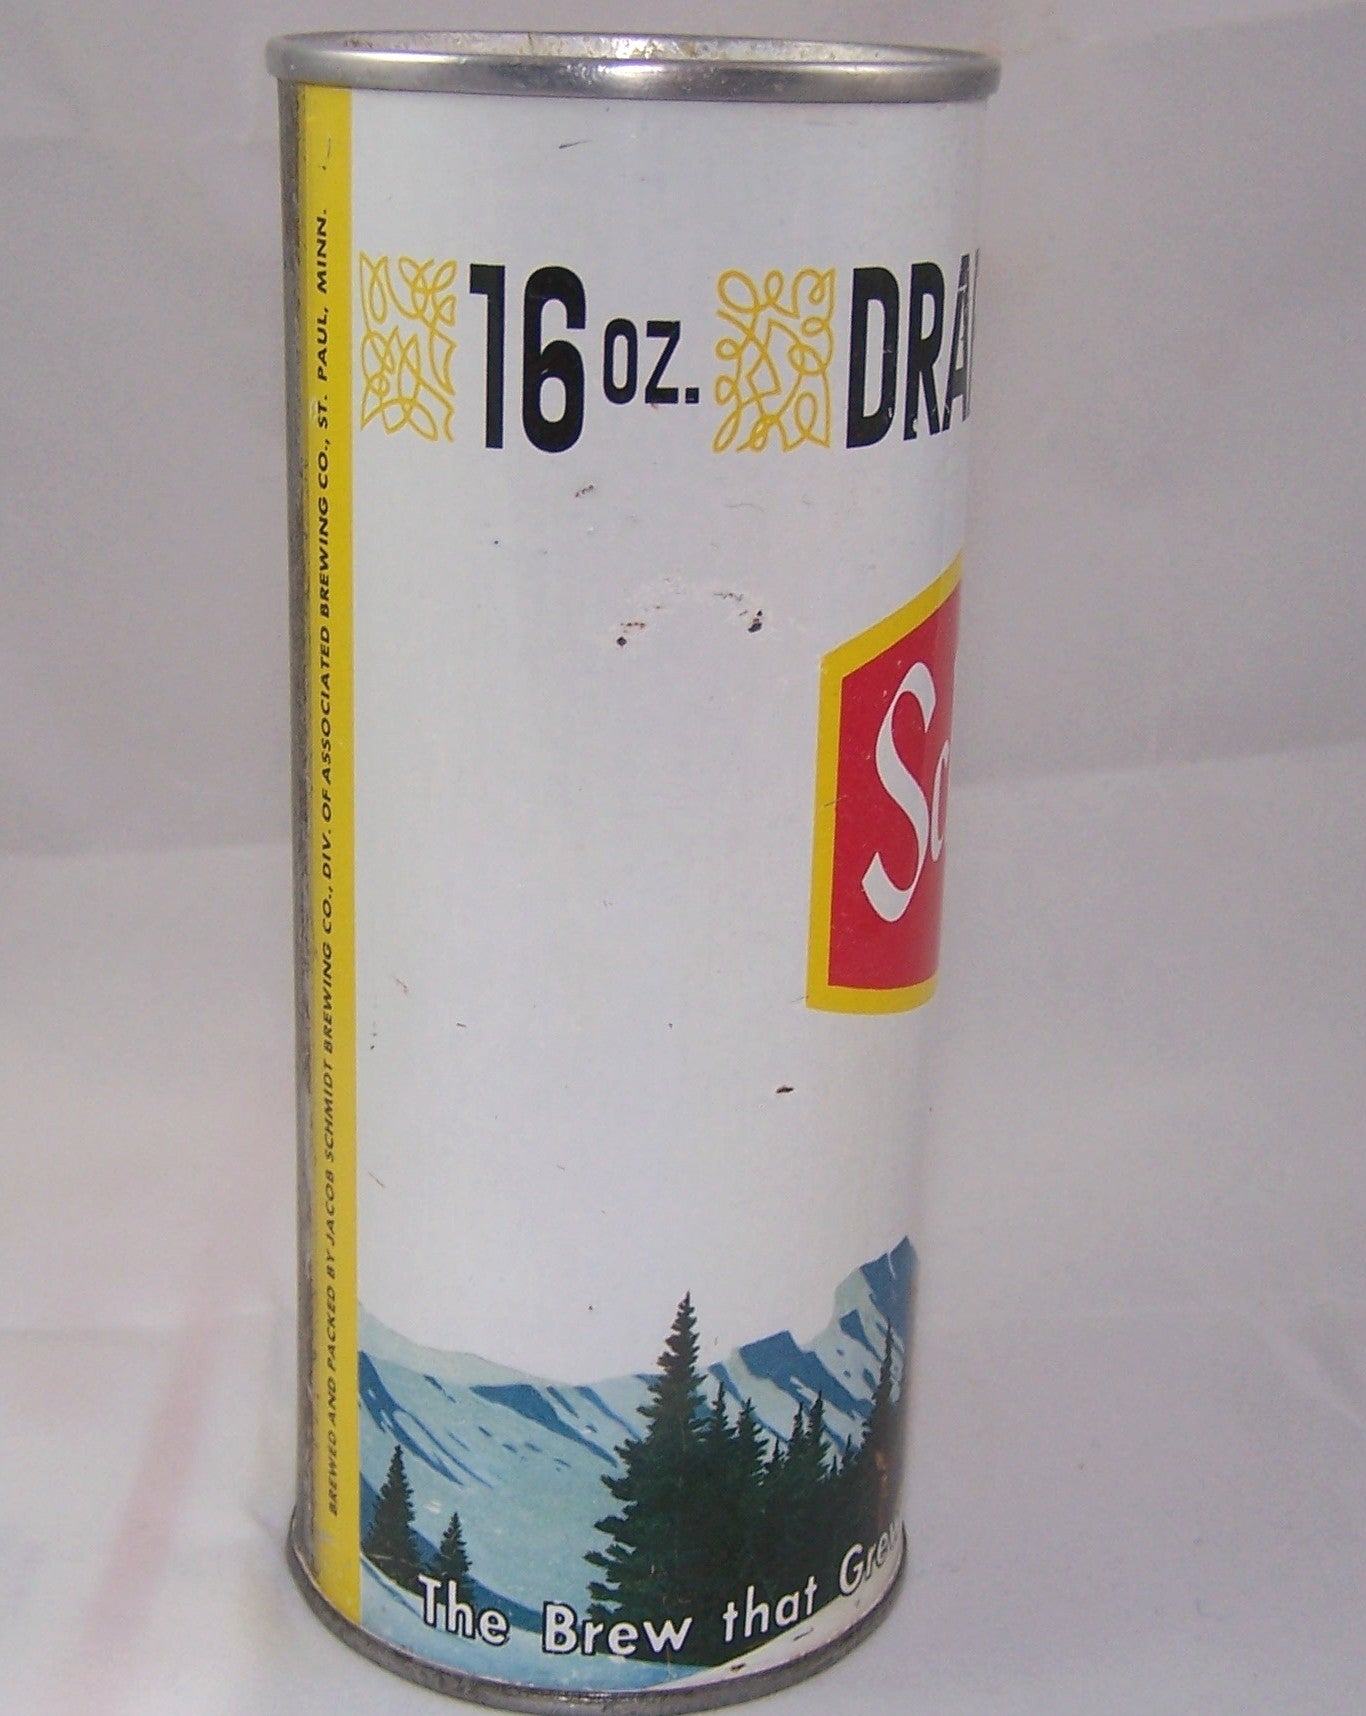 Schmidt Draft Beer (Elk) USBC II 203-set 28-7, Grade 1 sold 2/21/16